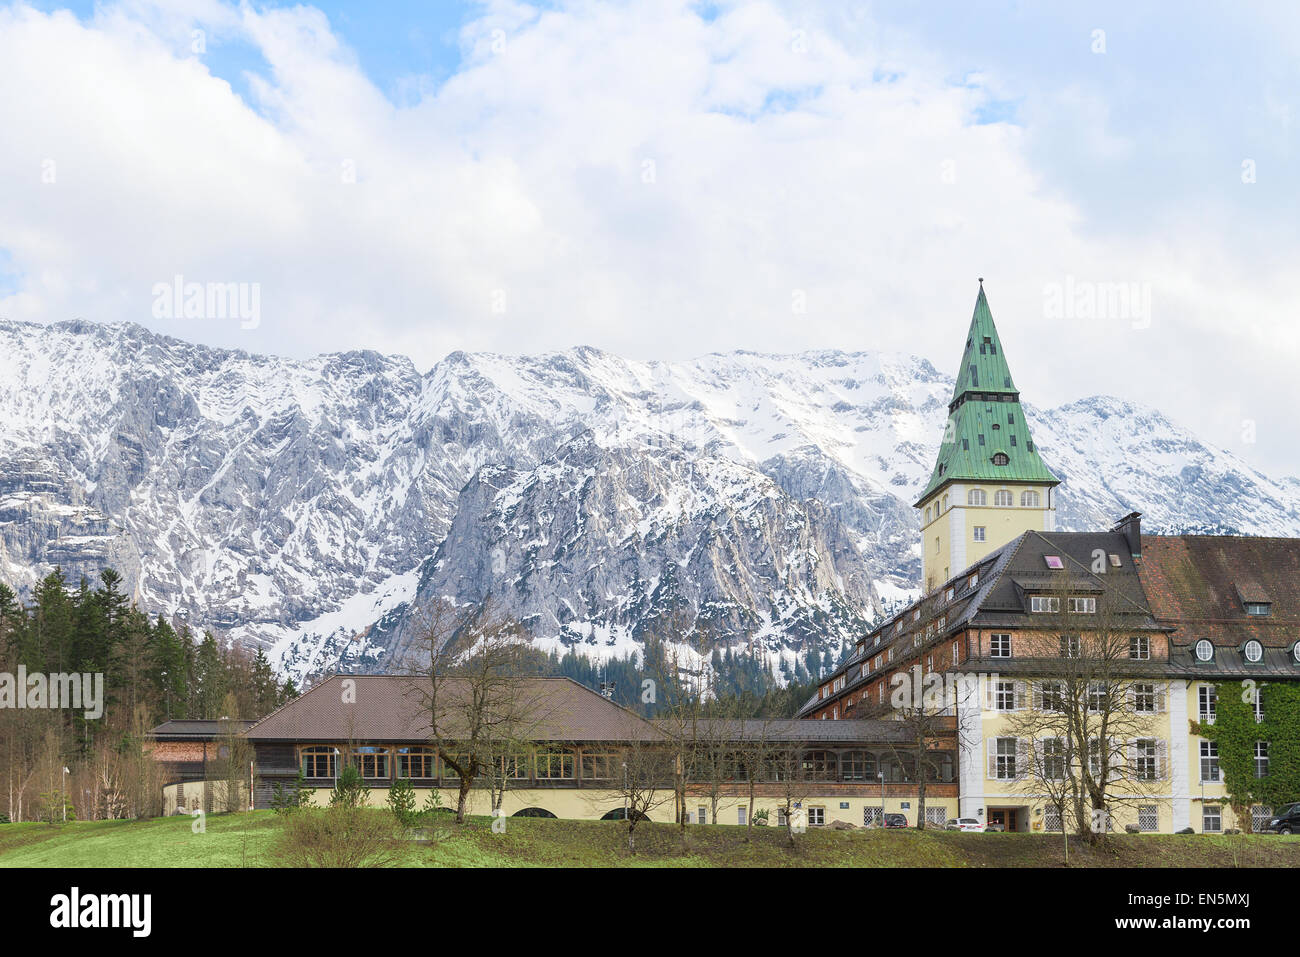 Schloss Elmau es un hotel de lujo que será la sede de la 41ª cumbre del G7 en junio. Este prestigioso hotel de 5 estrellas de hoy ofrece 123 habitaciones y suites. Es uno de los hoteles líderes del mundo. Foto de stock